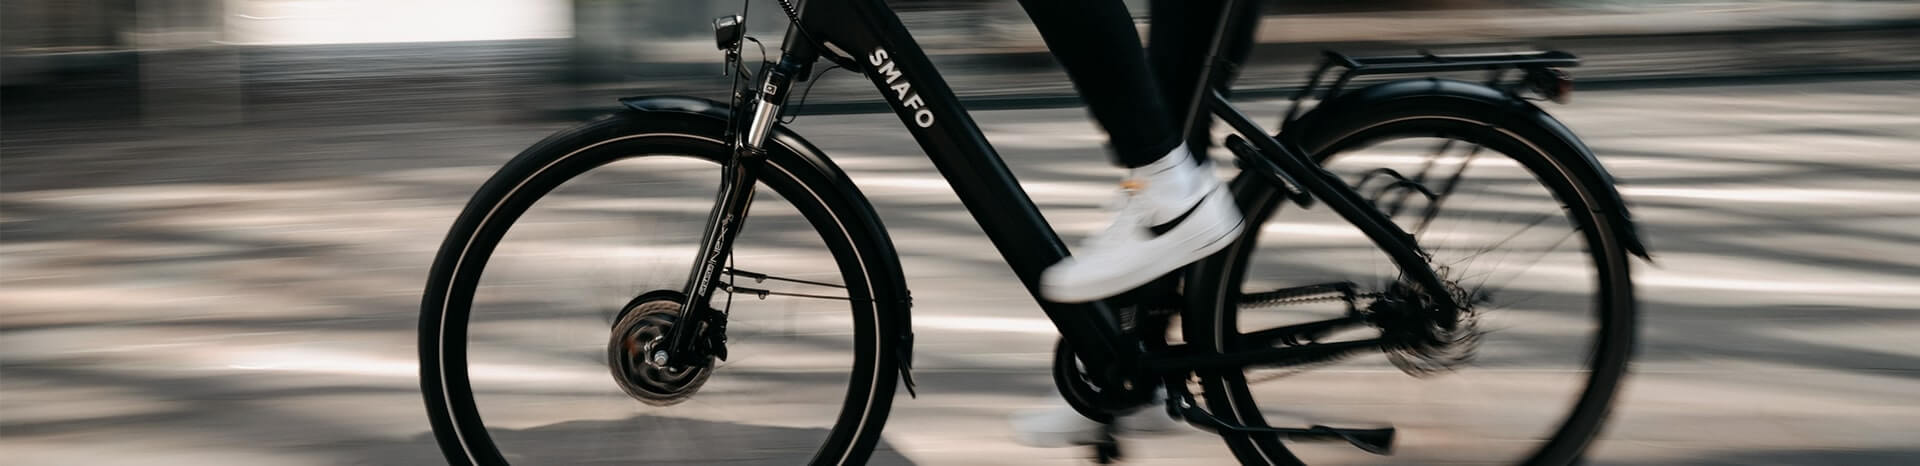 Aansprakelijkheid na opvoeren e-bike | LetselPro